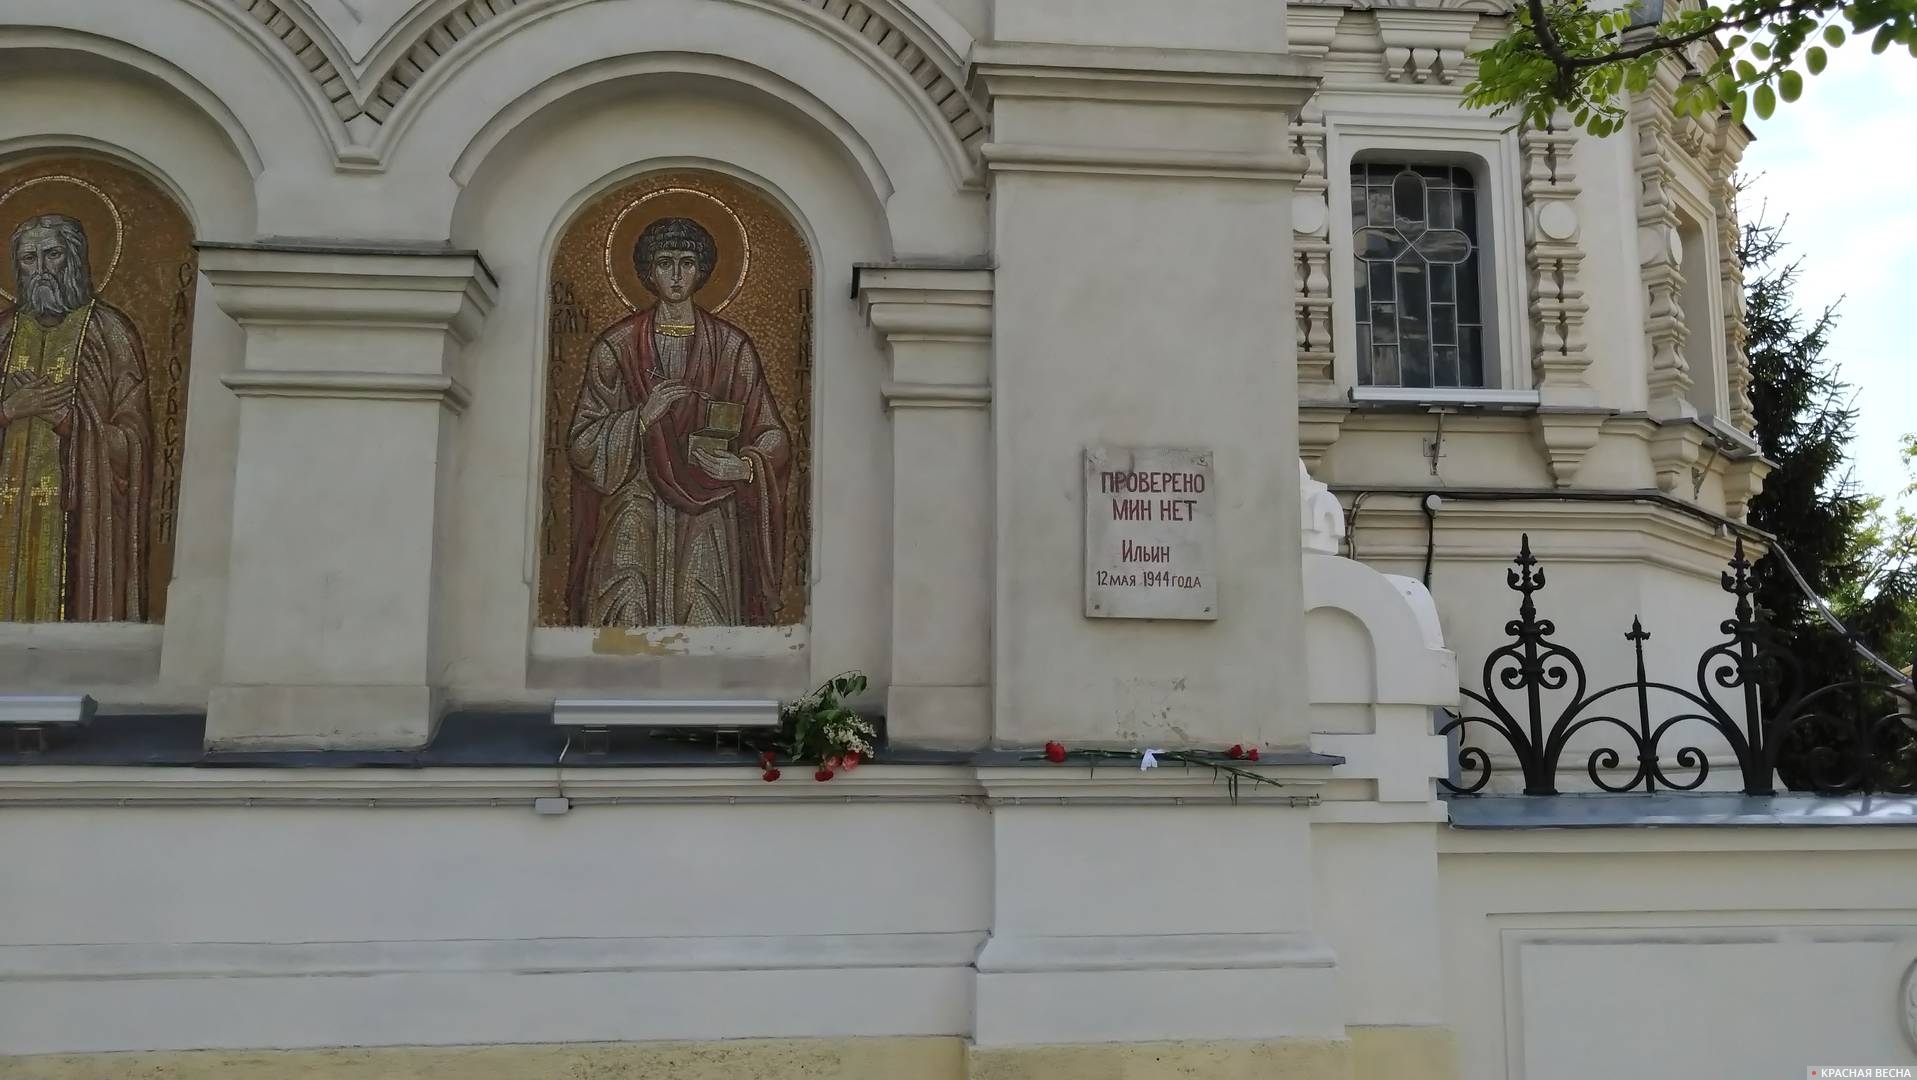 Табличка с надписью «Проверено. Мин нет» в Севастополе